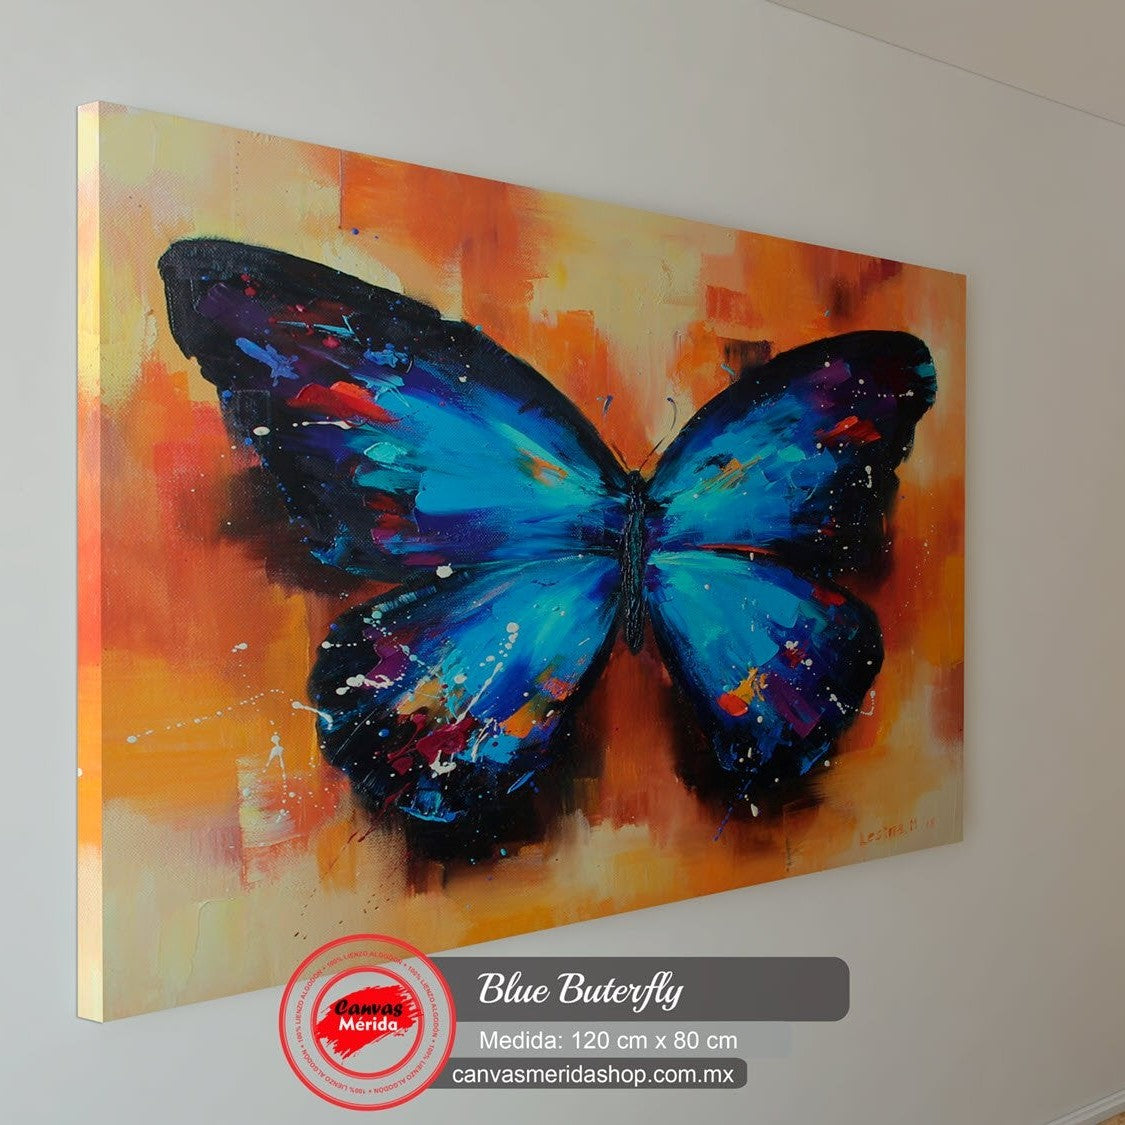 Blue Butterfly (Mariposa) - Canvas Mérida Fine Print Art